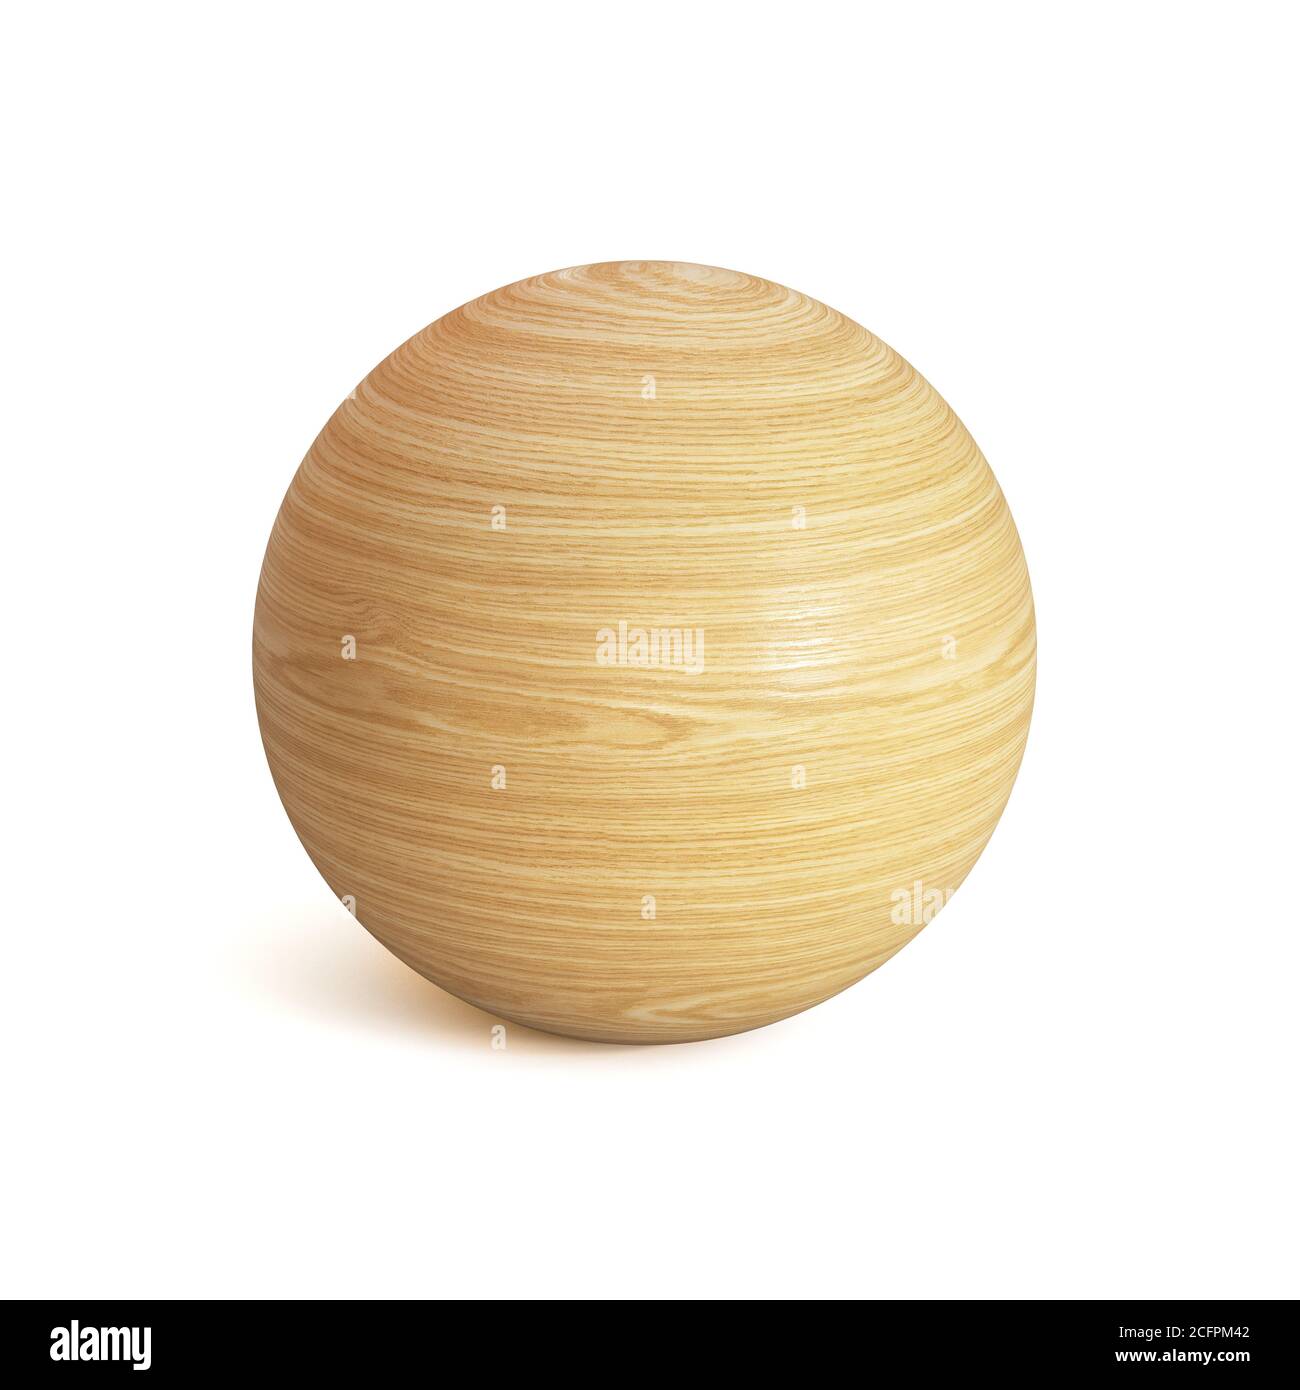 Sfera di legno rendering 3d, forma sferica in legno isolato su sfondo bianco Foto Stock